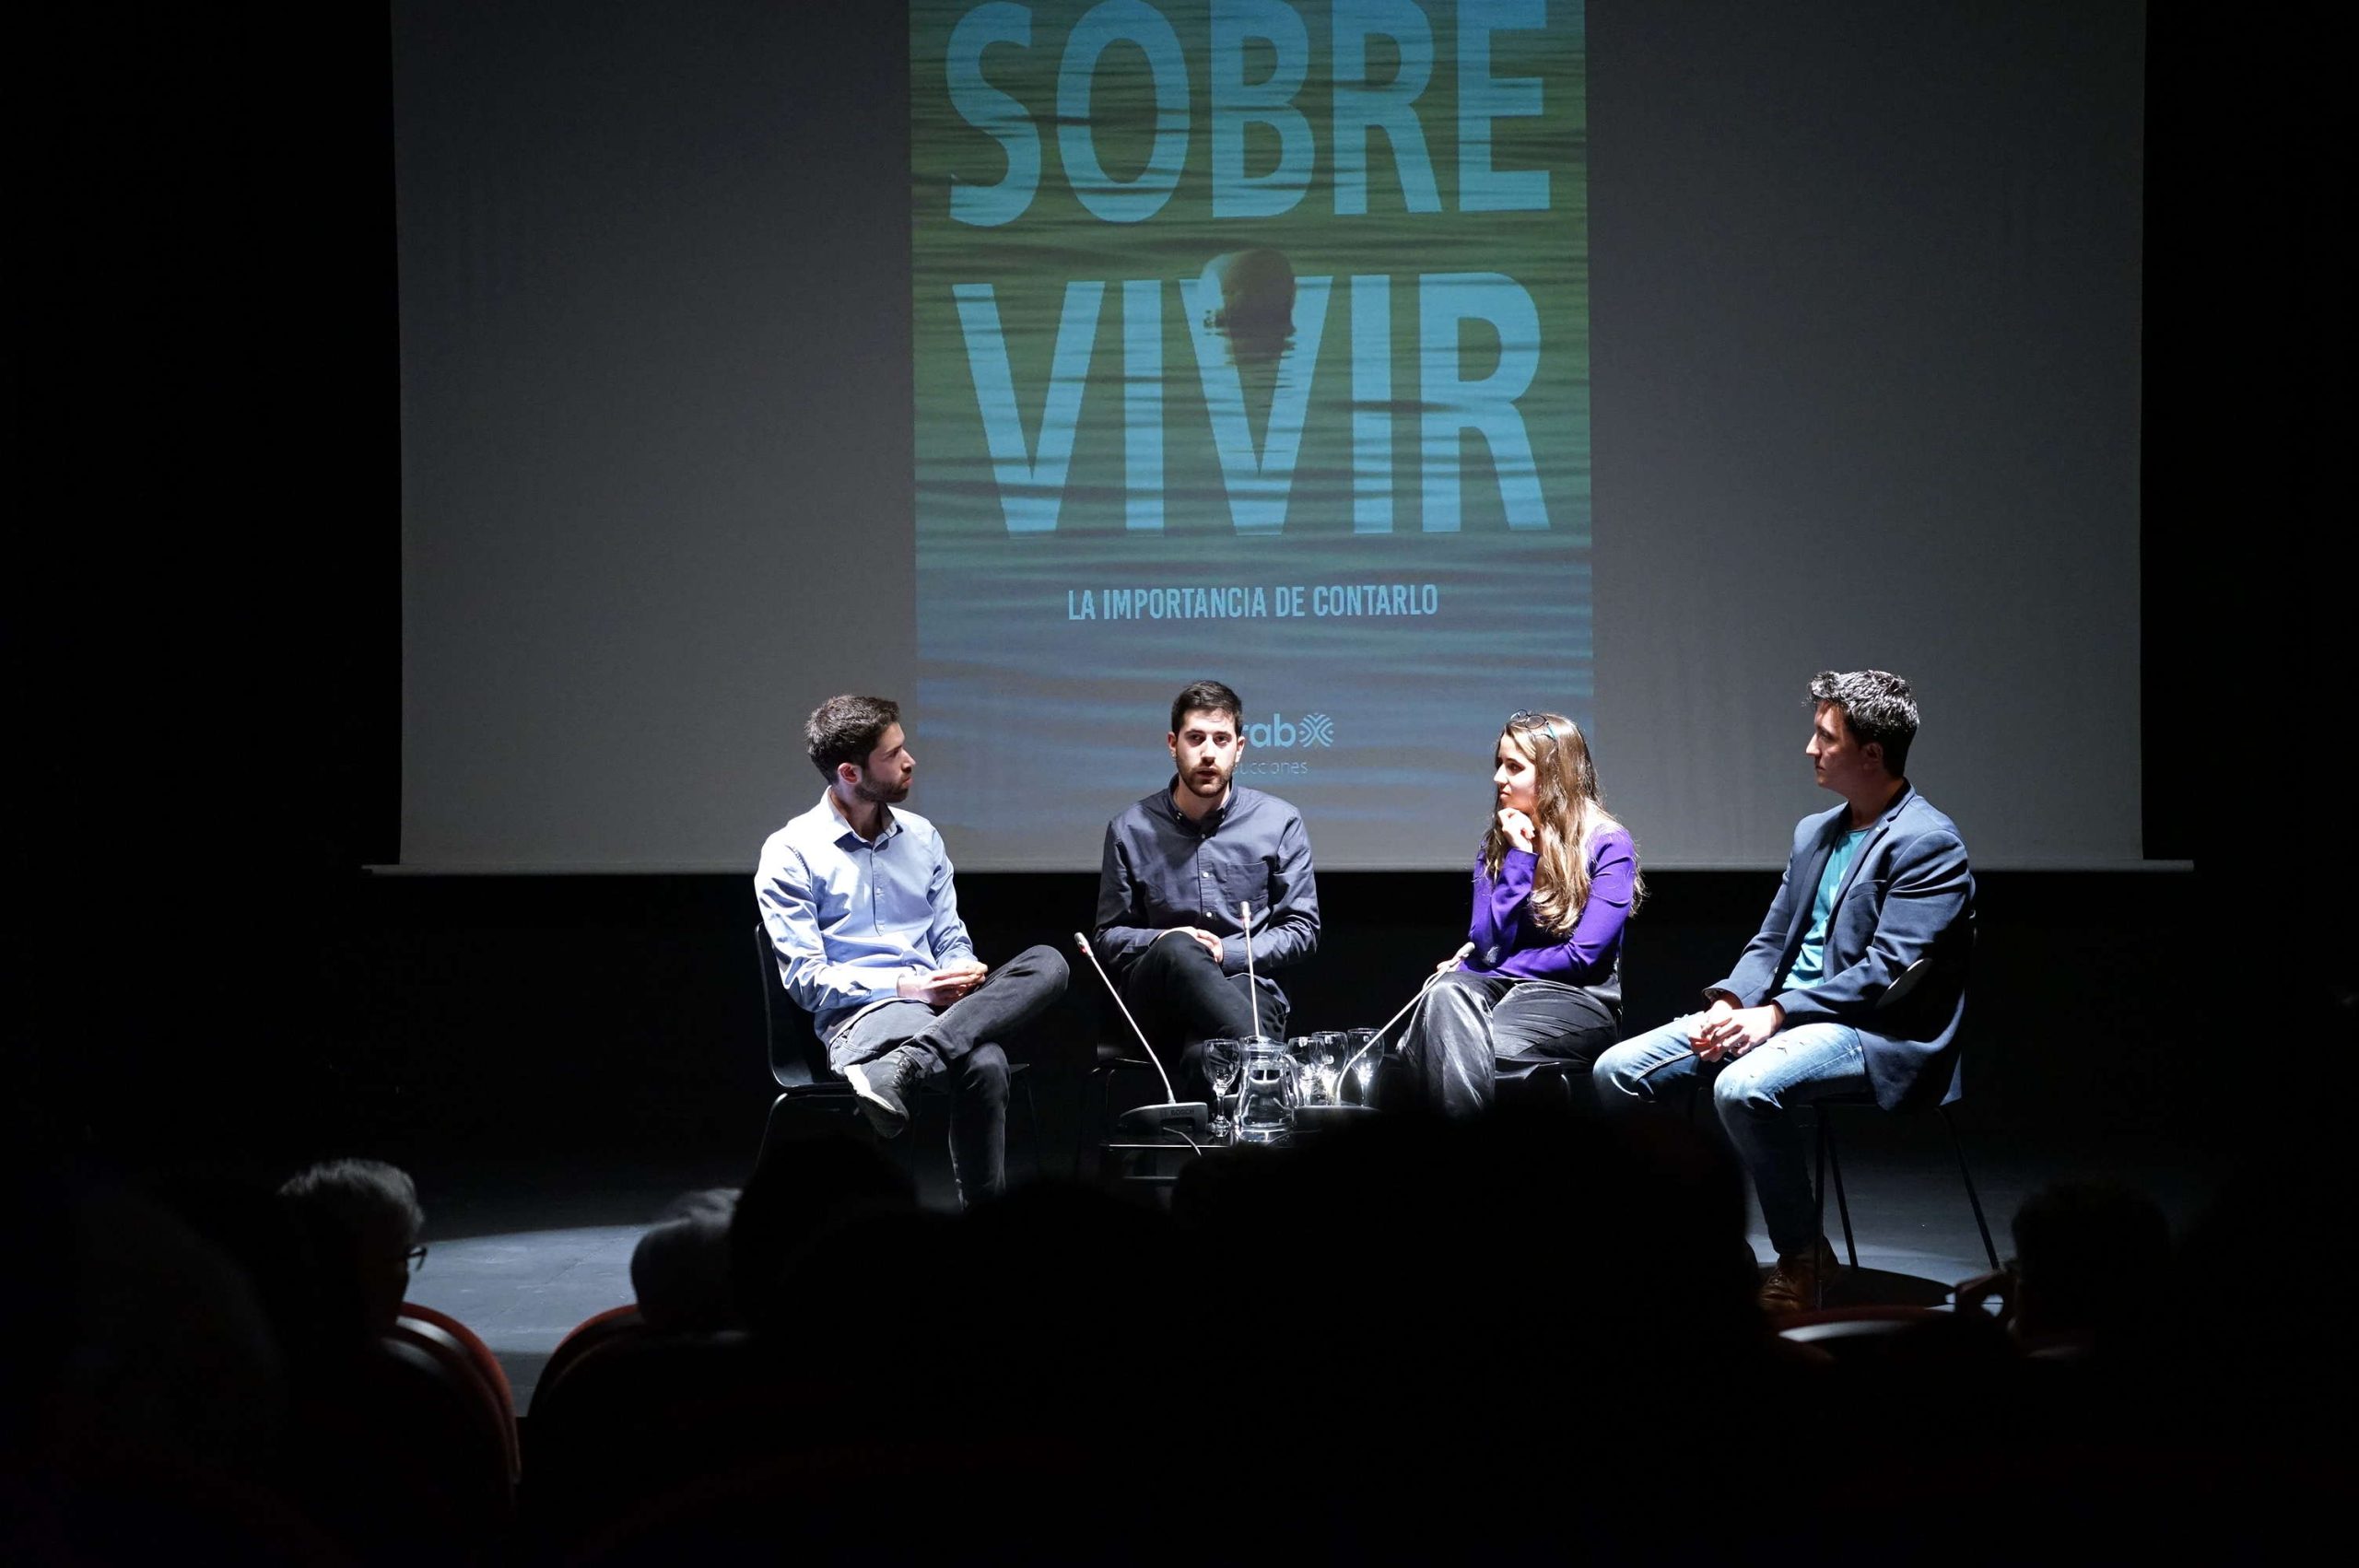 Diputación acoge el estreno de “Sobre vivir”, un documental para visibilizar el suicidio